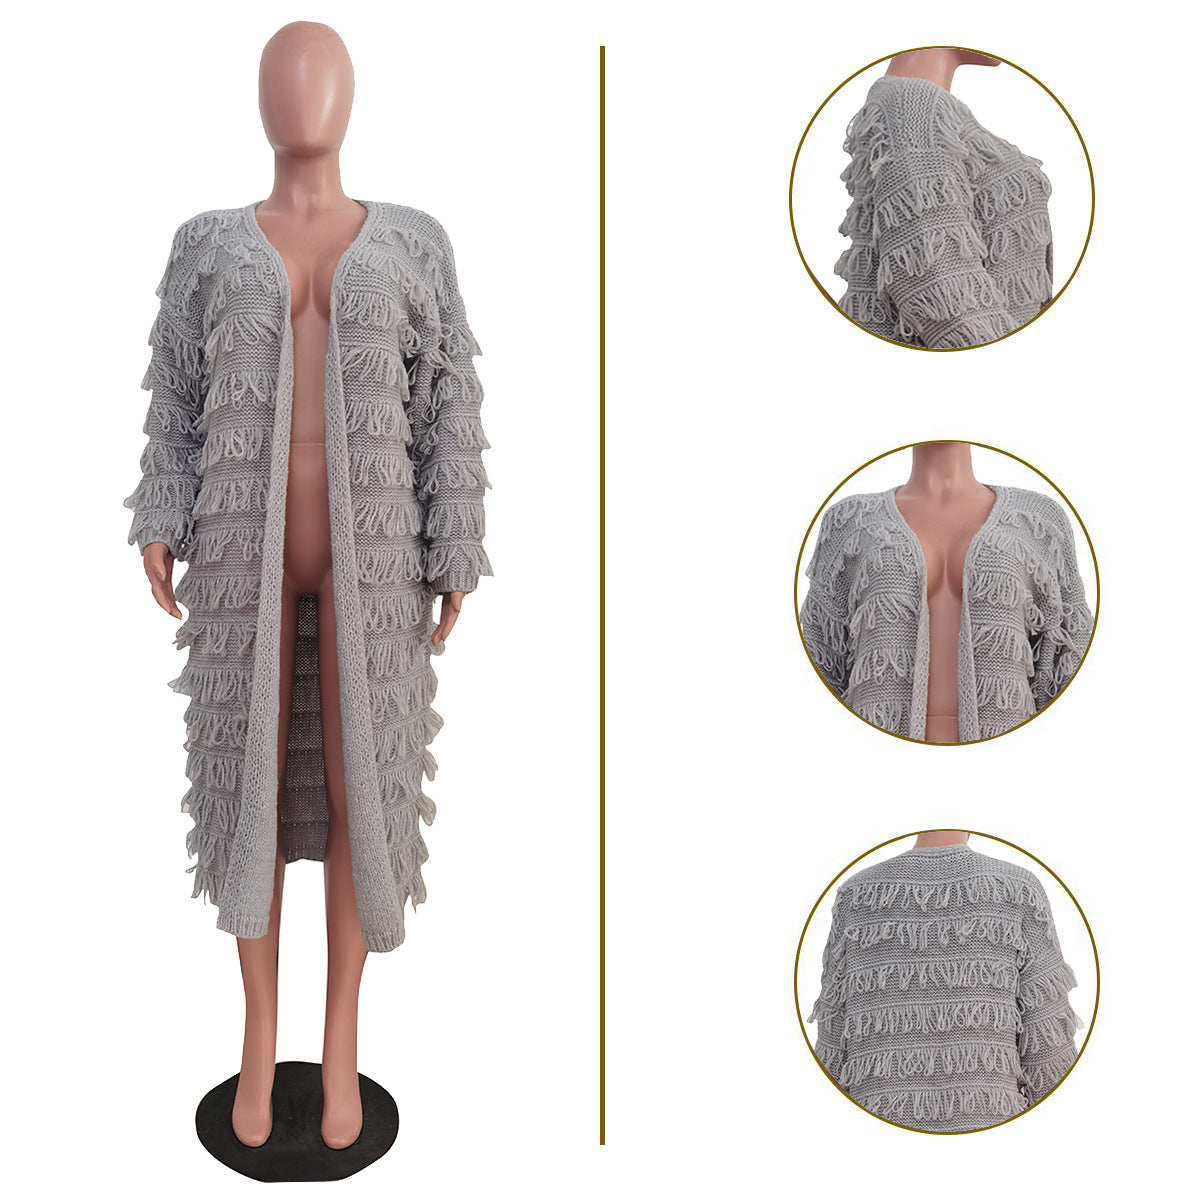 BamBam Women winter fashion tassel knitting long coat - BamBam